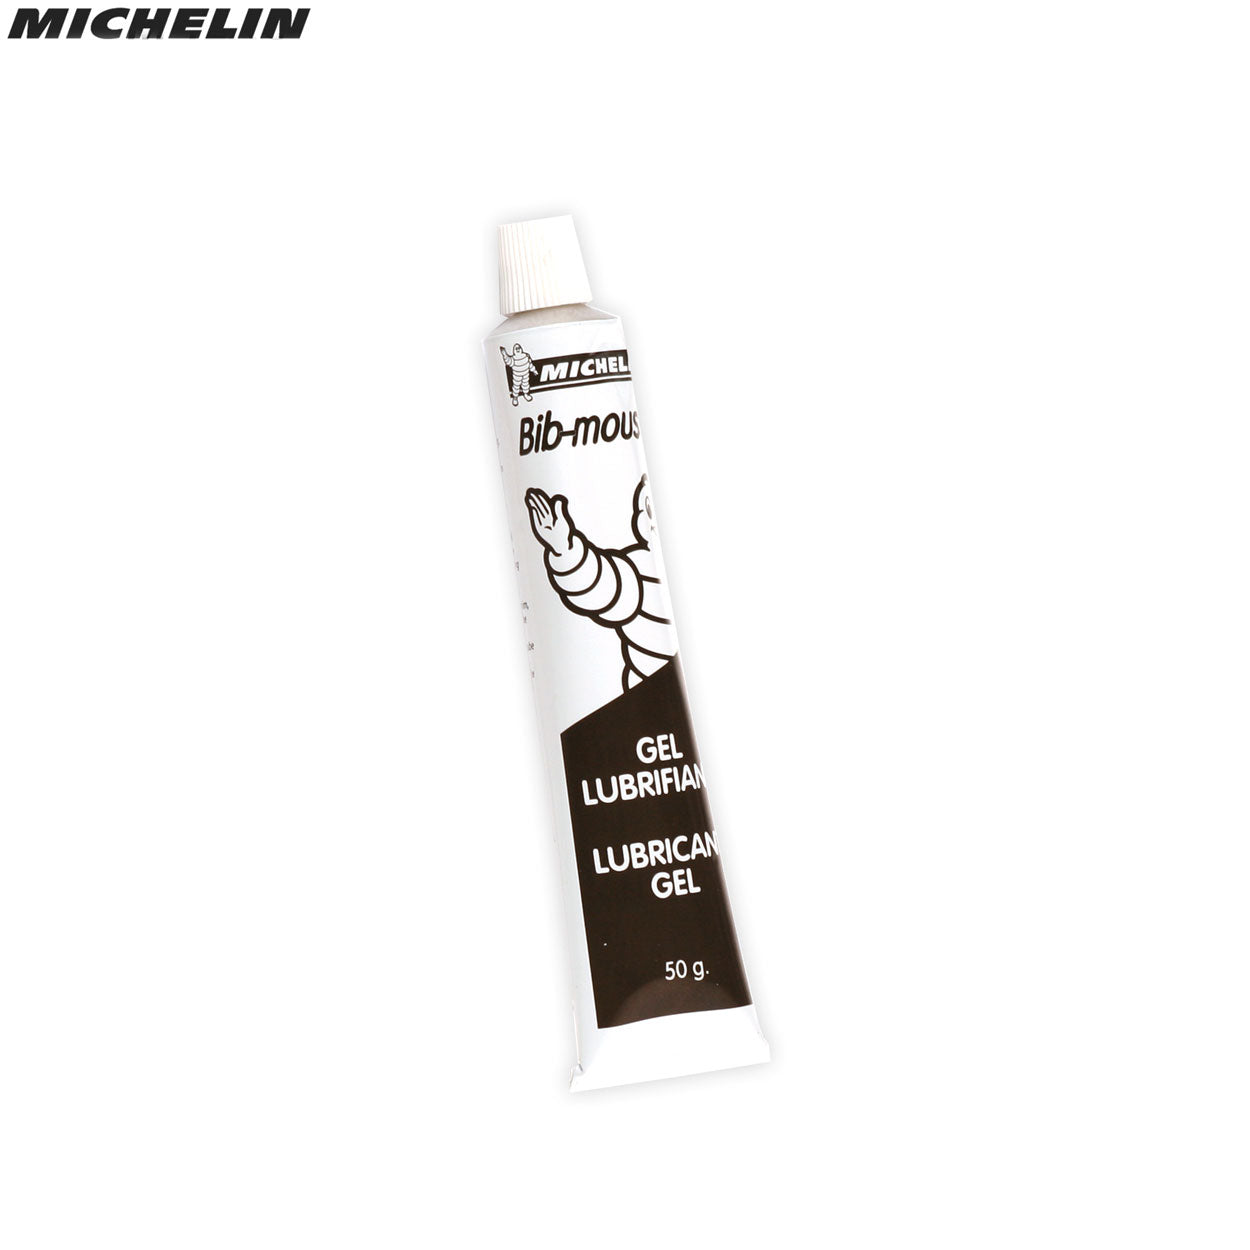 Michelin Bib Mousse Gel Single Tube